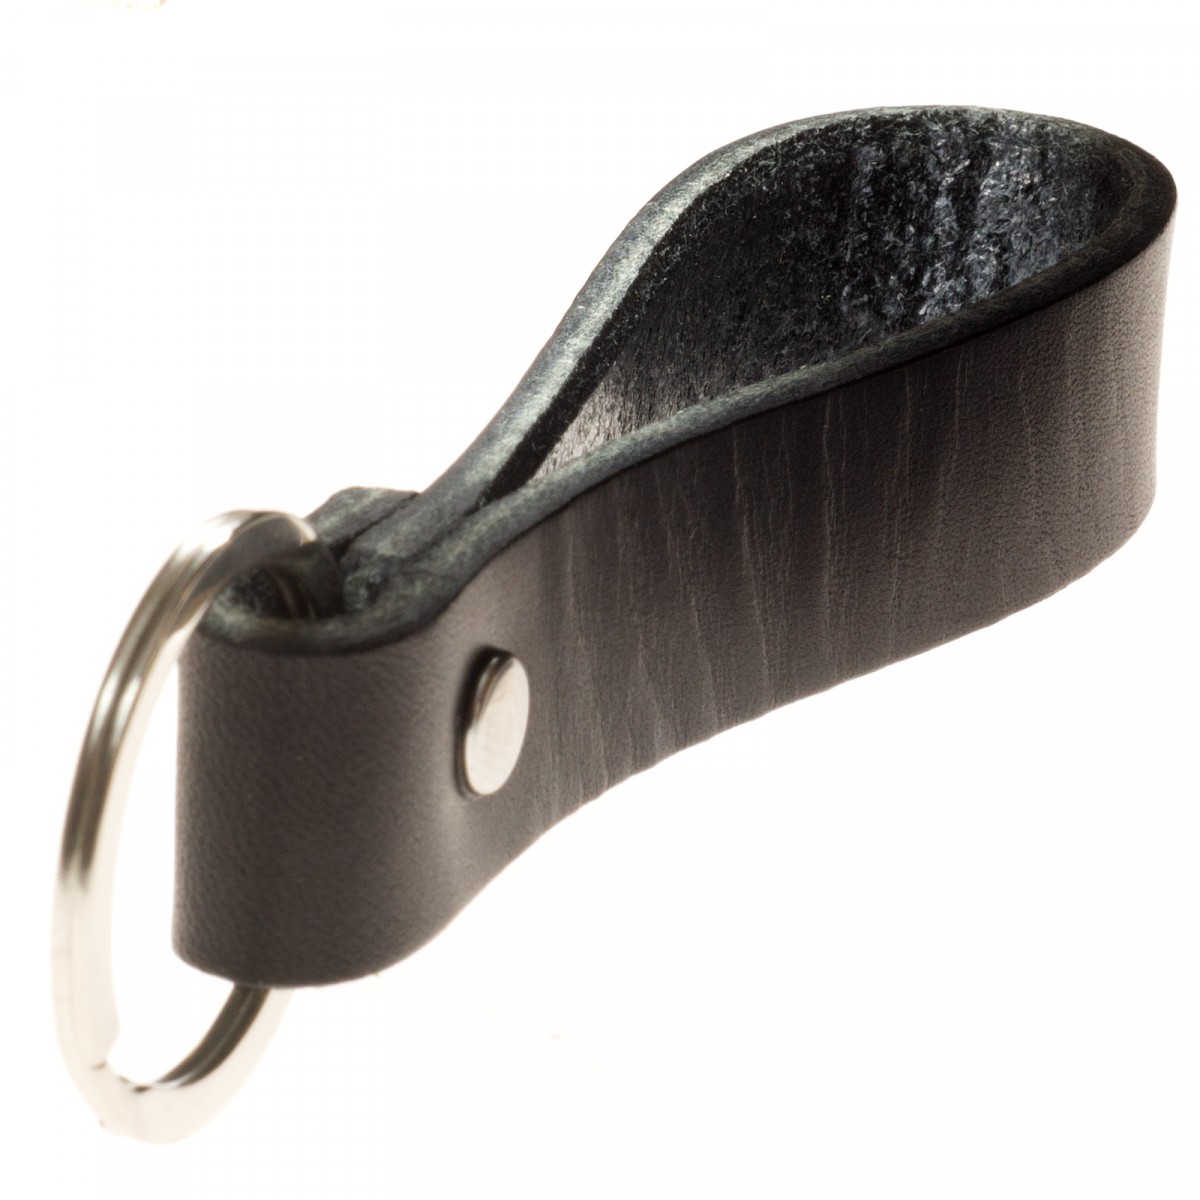  LIEBHARDT Leder Schlüsselanhänger aus pflanzlich gegerbtem Leder genietet (schwarz) 